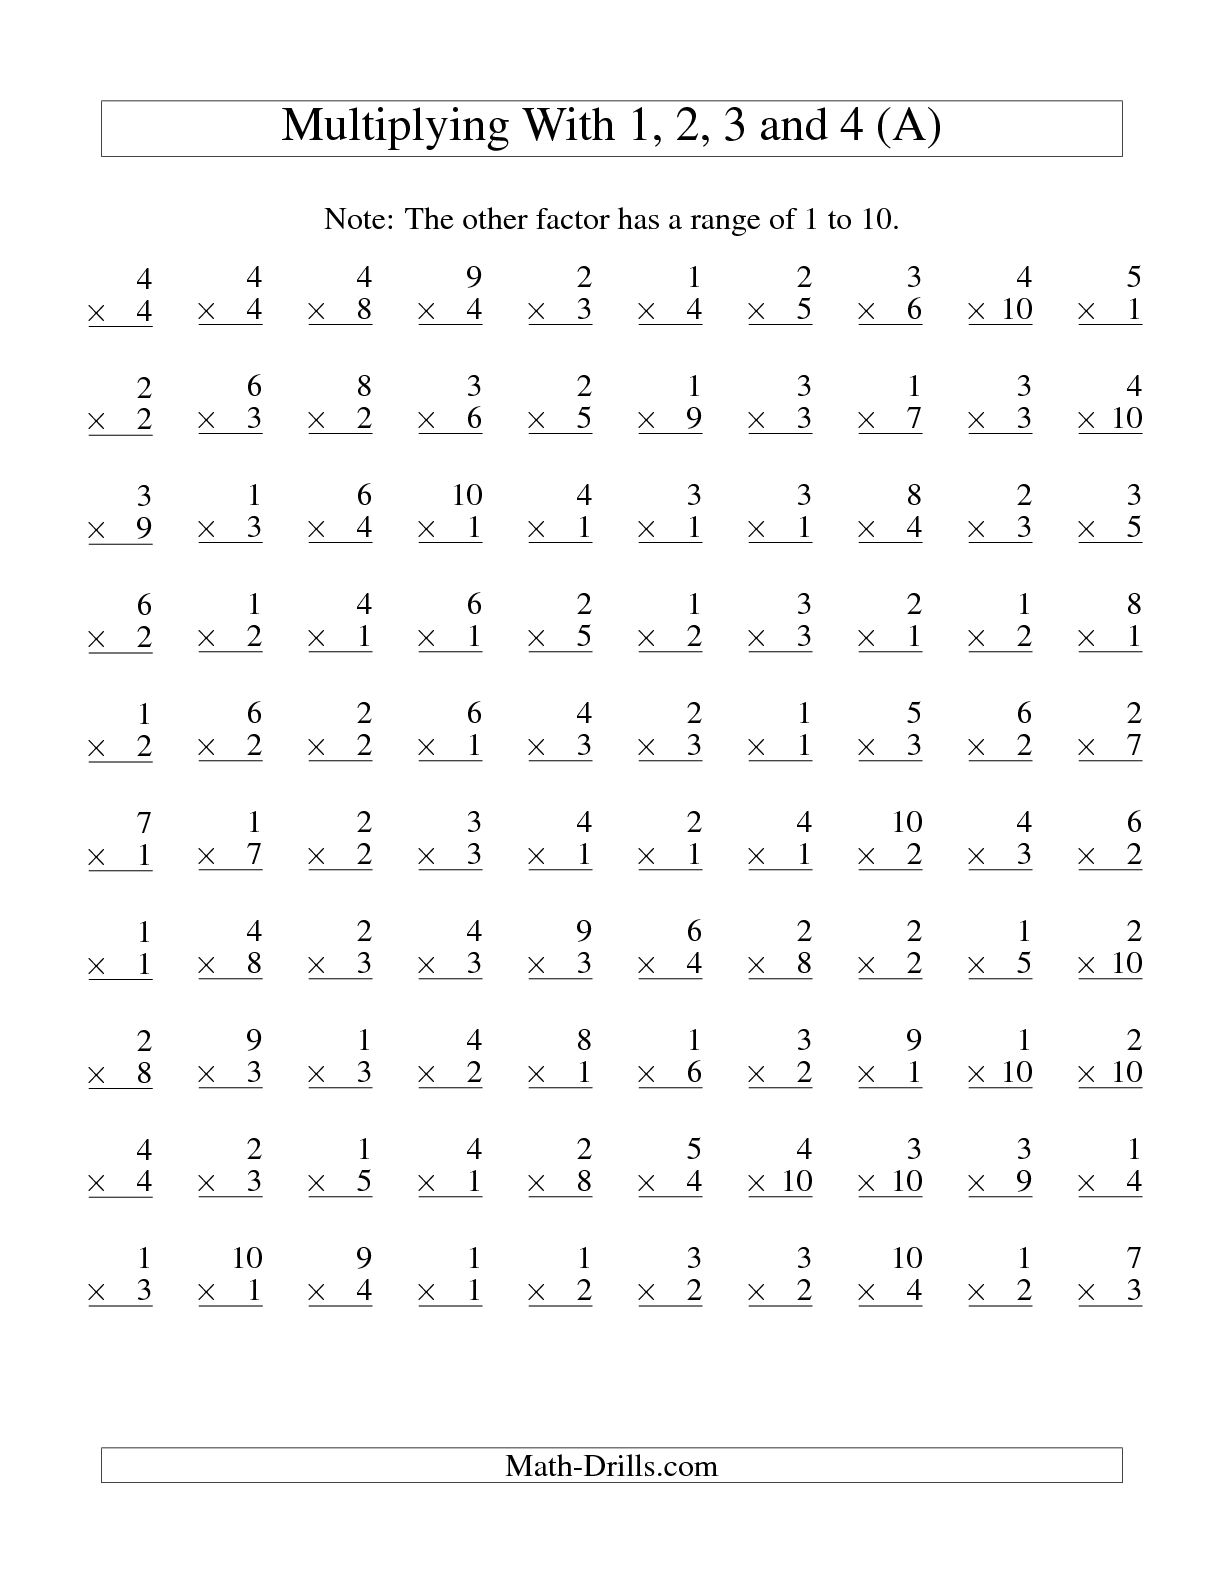 12-best-images-of-multiplication-worksheets-1-11-100-question-multiplication-worksheet-1-10-2